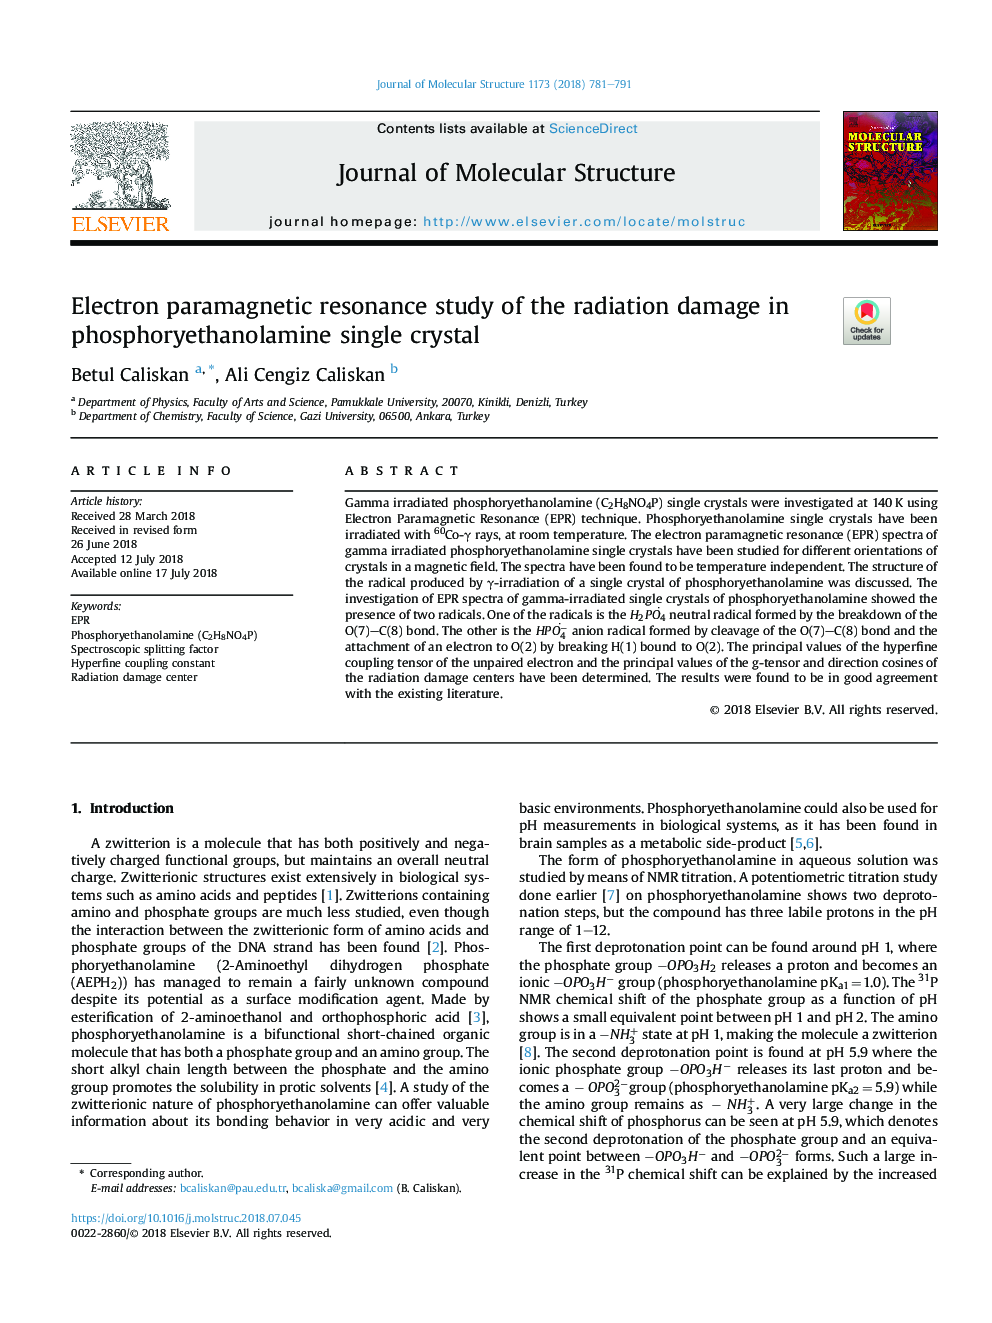 مطالعه ی رزونانس پارامغناطیسی الکترونی از آسیب تابش در کریستال فسفاته اتانولامین 